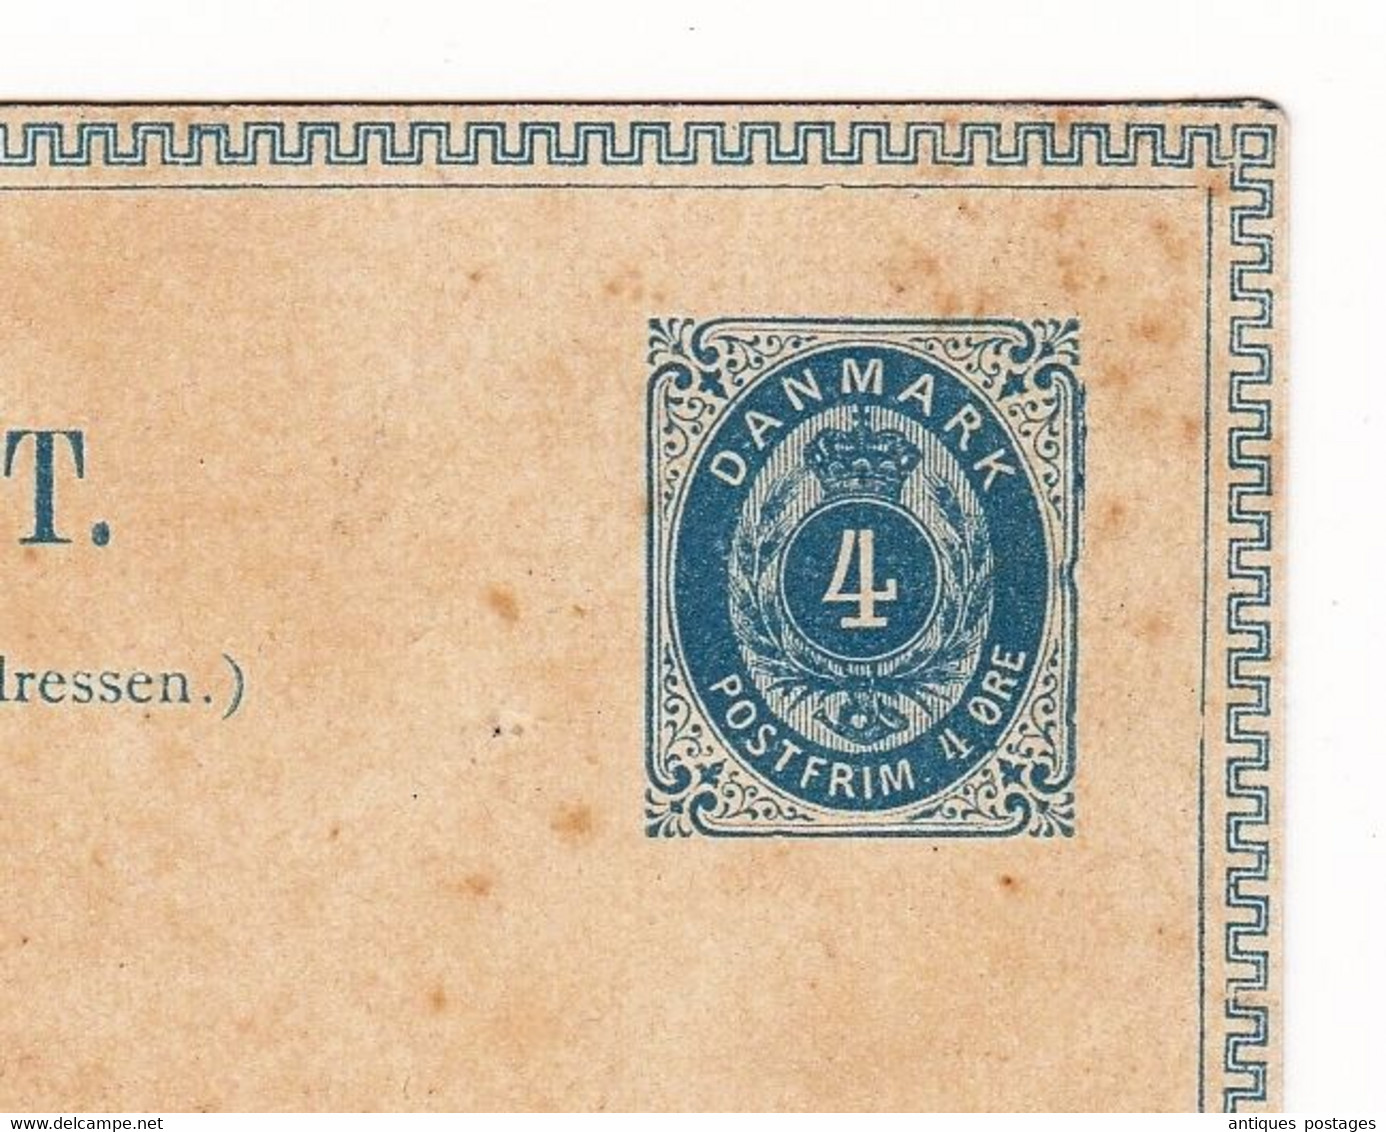 Postal Stationery Danemark Danmark Denmark Brev-Kort Entier Postal - Interi Postali